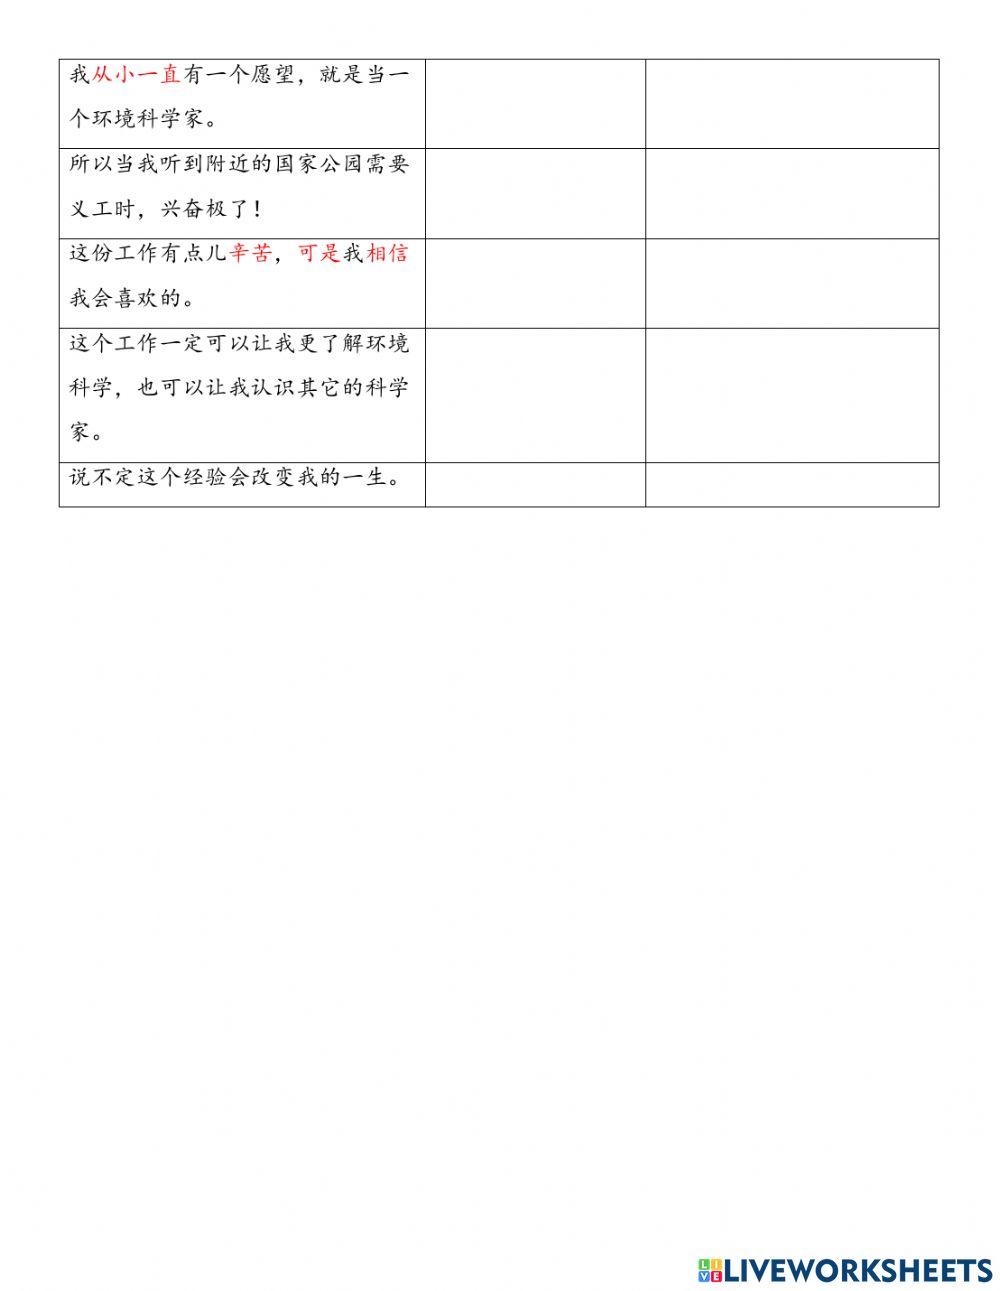 Chaoyue L6 申请大学和社区服务